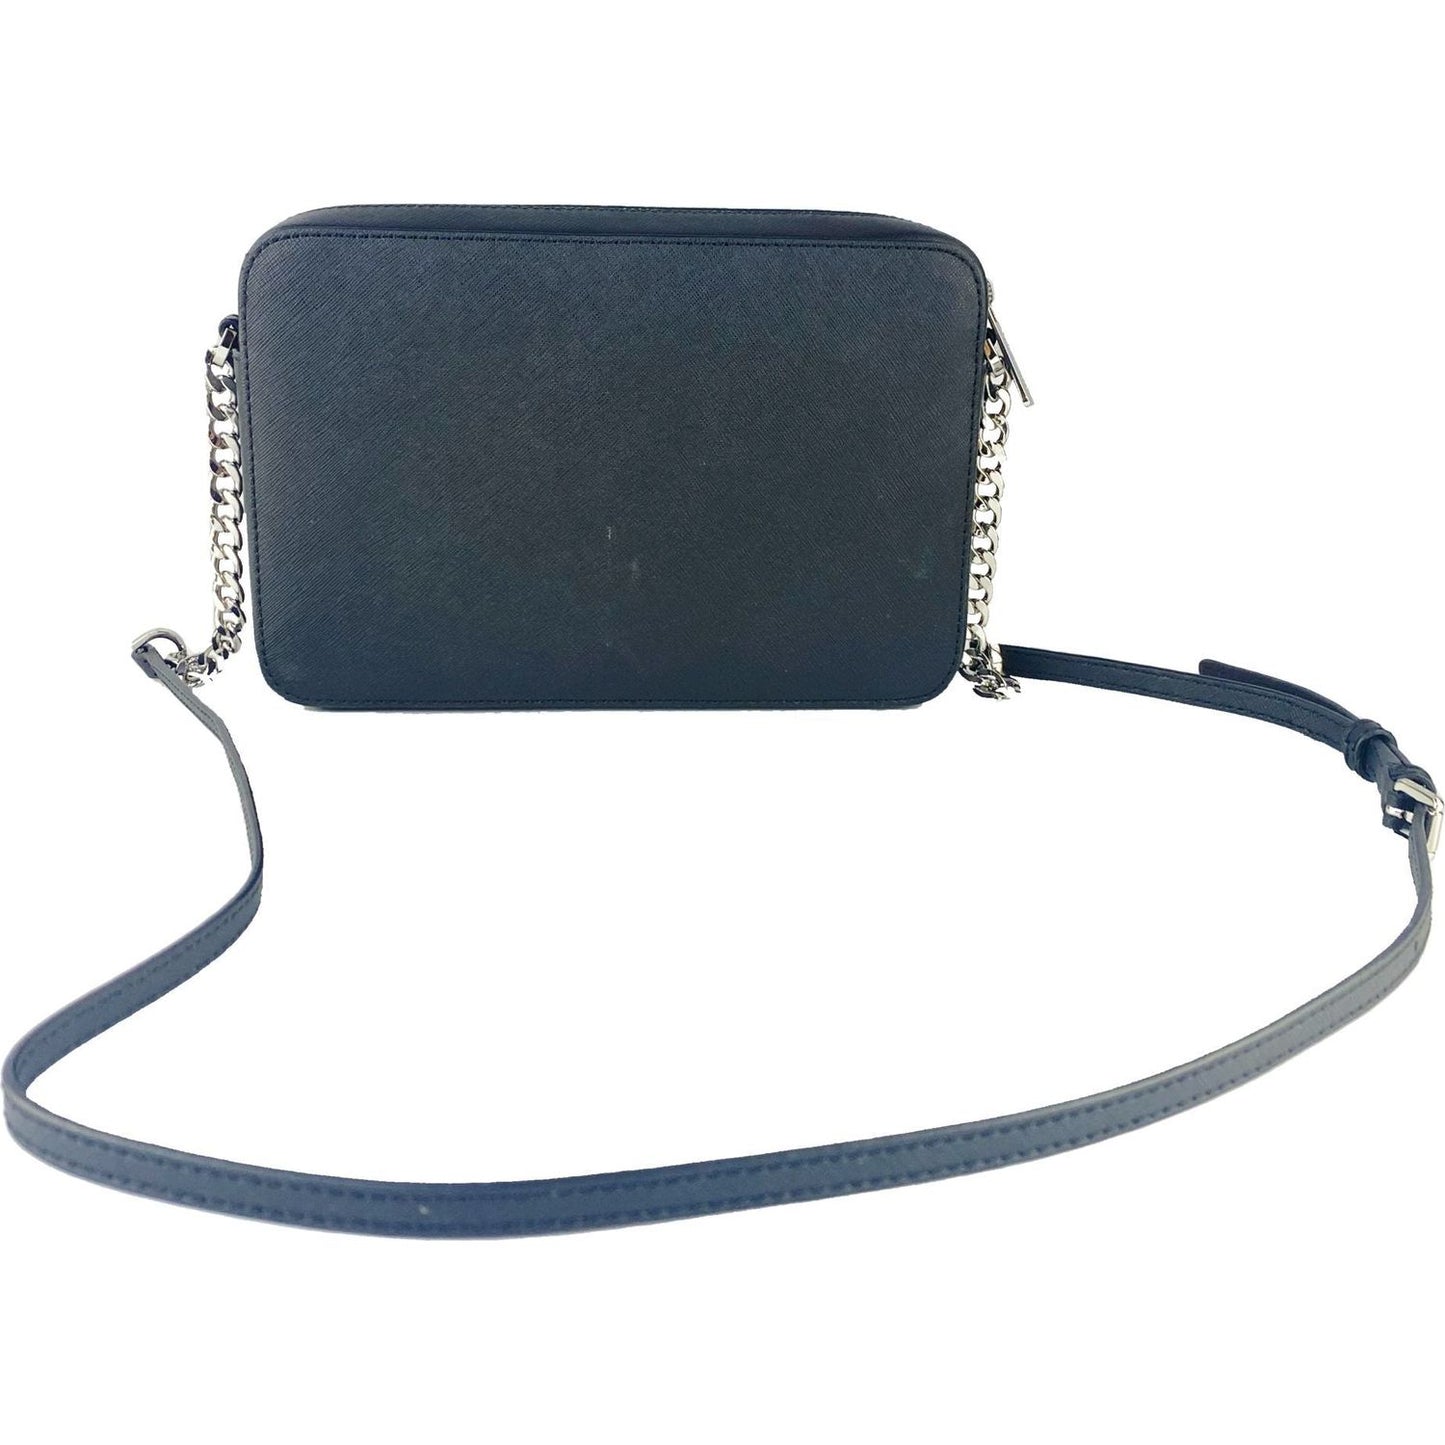 Michael Kors | Jet Set Large East West Saffiano Leather Crossbody Bag Handbag (Black Solid/Silver Hardware)| McRichard Designer Brands   